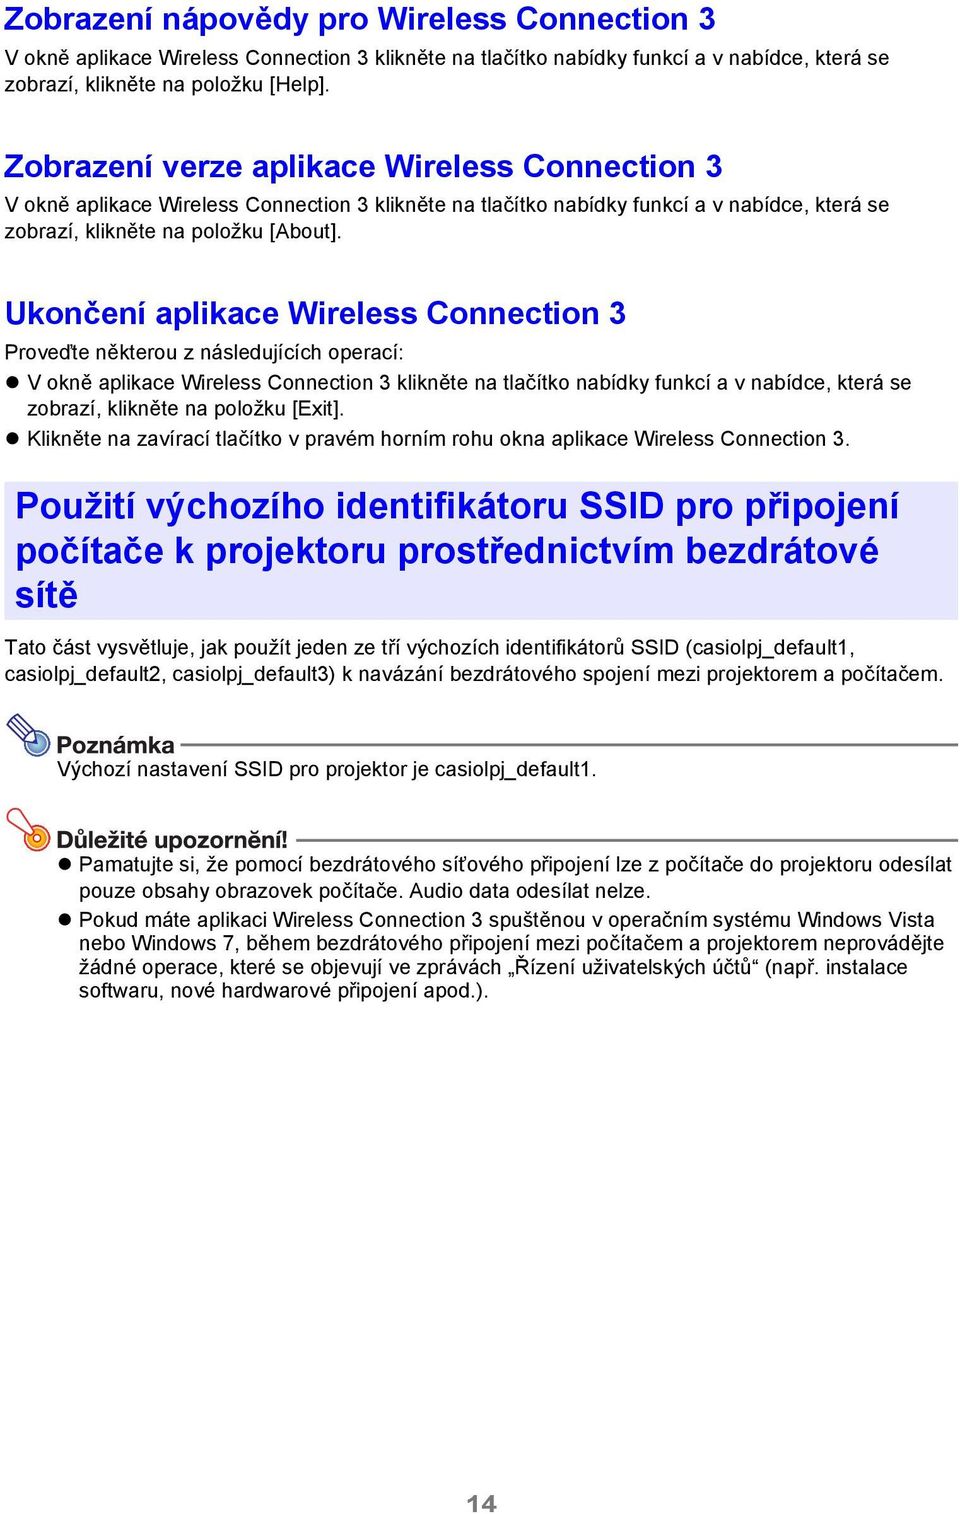 Ukončení aplikace Wireless Connection 3 Proveďte některou z následujících operací: V okně aplikace Wireless Connection 3 klikněte na tlačítko nabídky funkcí a v nabídce, která se zobrazí, klikněte na